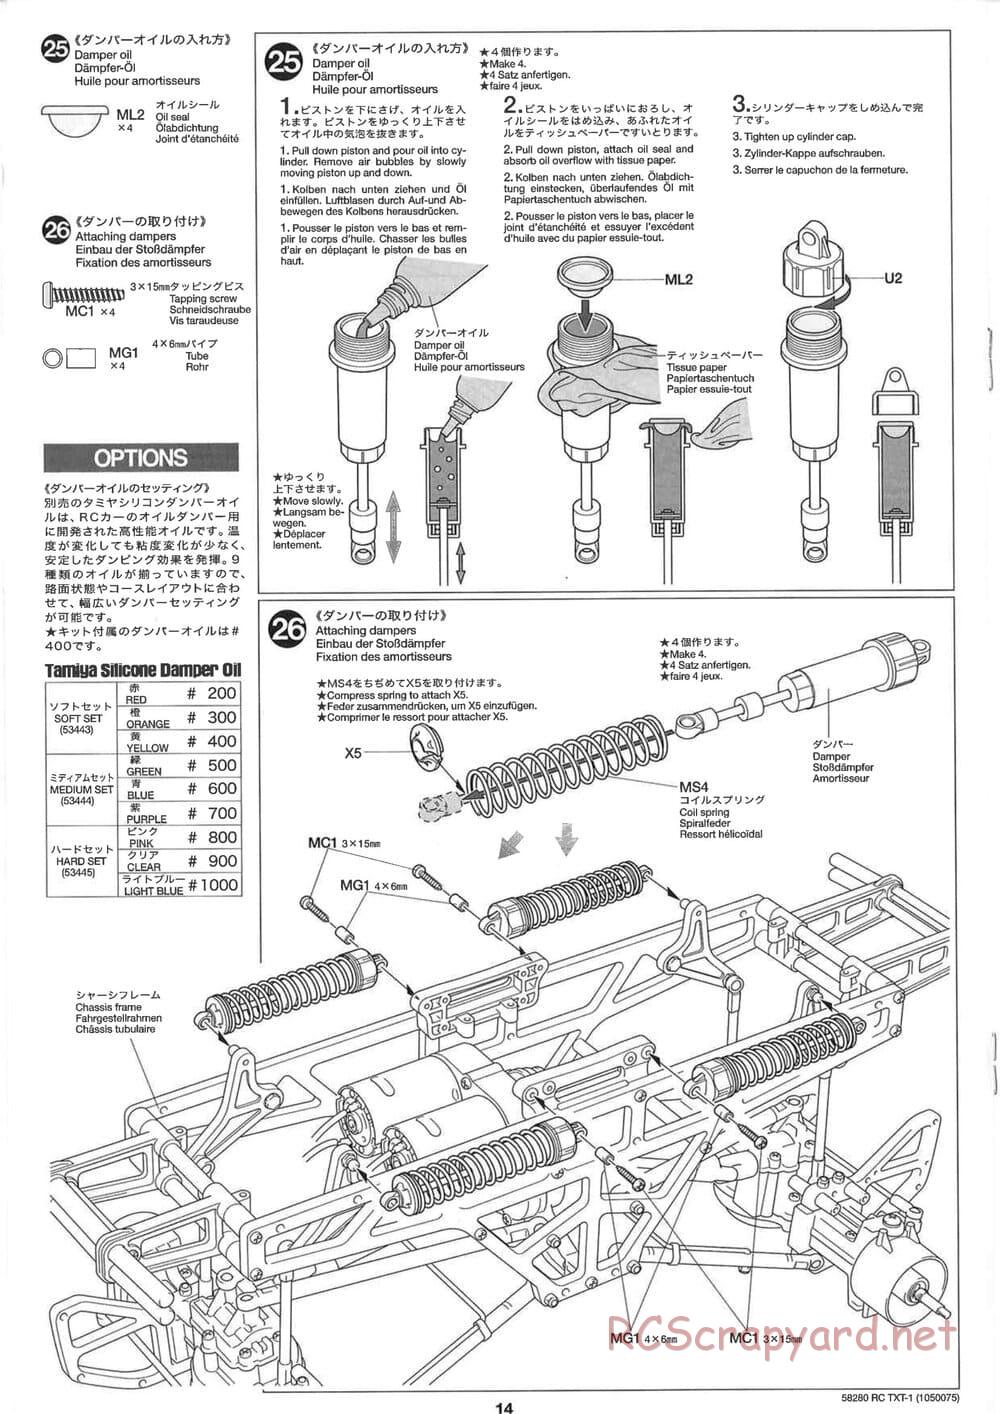 Tamiya - TXT-1 (Tamiya Xtreme Truck) Chassis - Manual - Page 14